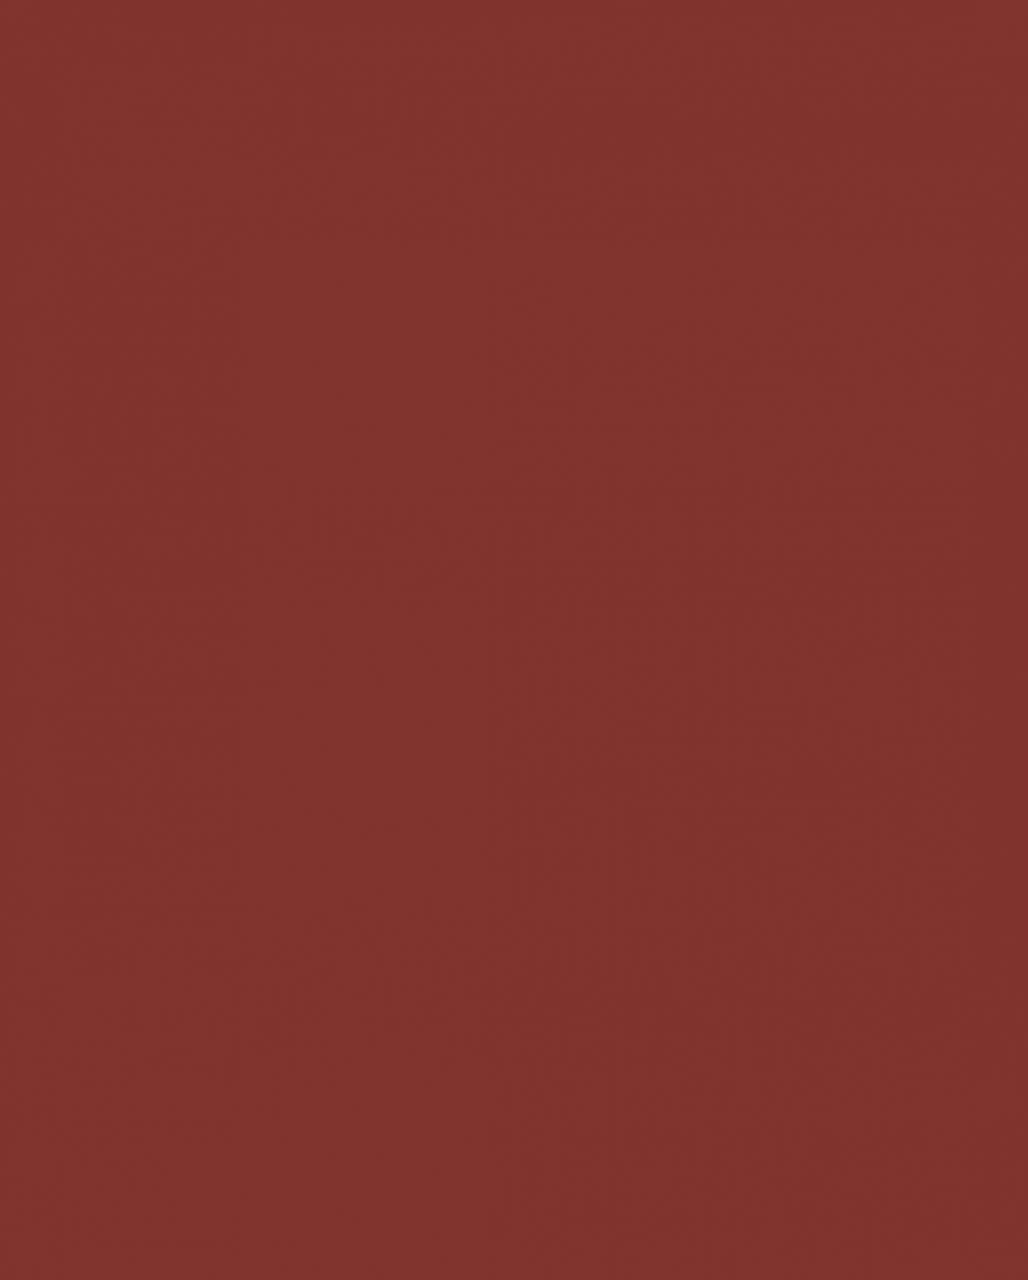 Εικόνα του δείγματος K098 Ceramic Red UM Plus, που αναδεικνύει το ζωηρό κόκκινο χρώμα και την υφή του.